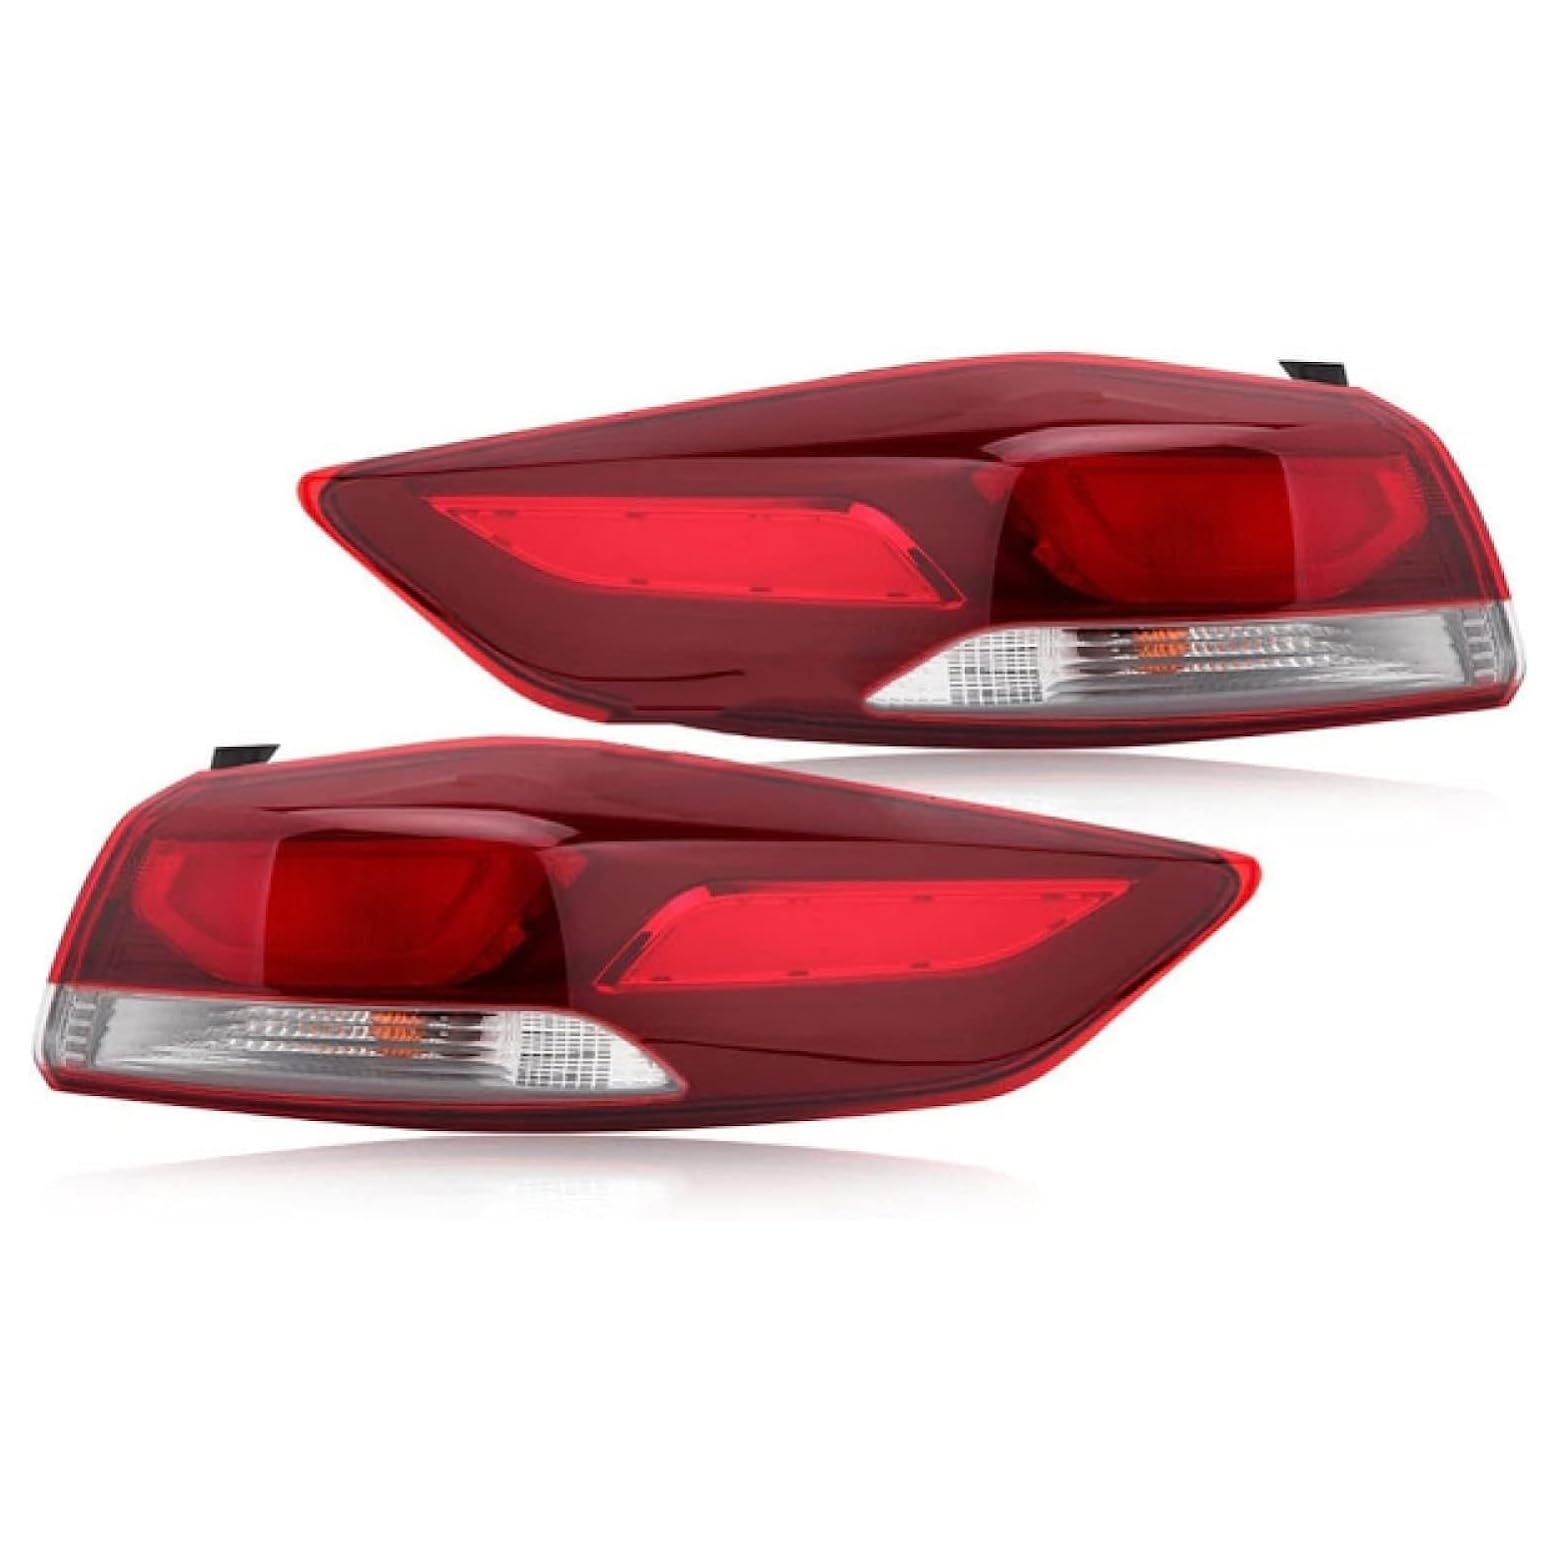 KLFDT Auto Rücklicht-Komplettsets für Hyundai Elantra 2017-2019,Auto Rücklicht Komplettset, Auto Rücklicht Montage Ersatz Rücklichter Heckleuchten Set,A/Right von KLFDT